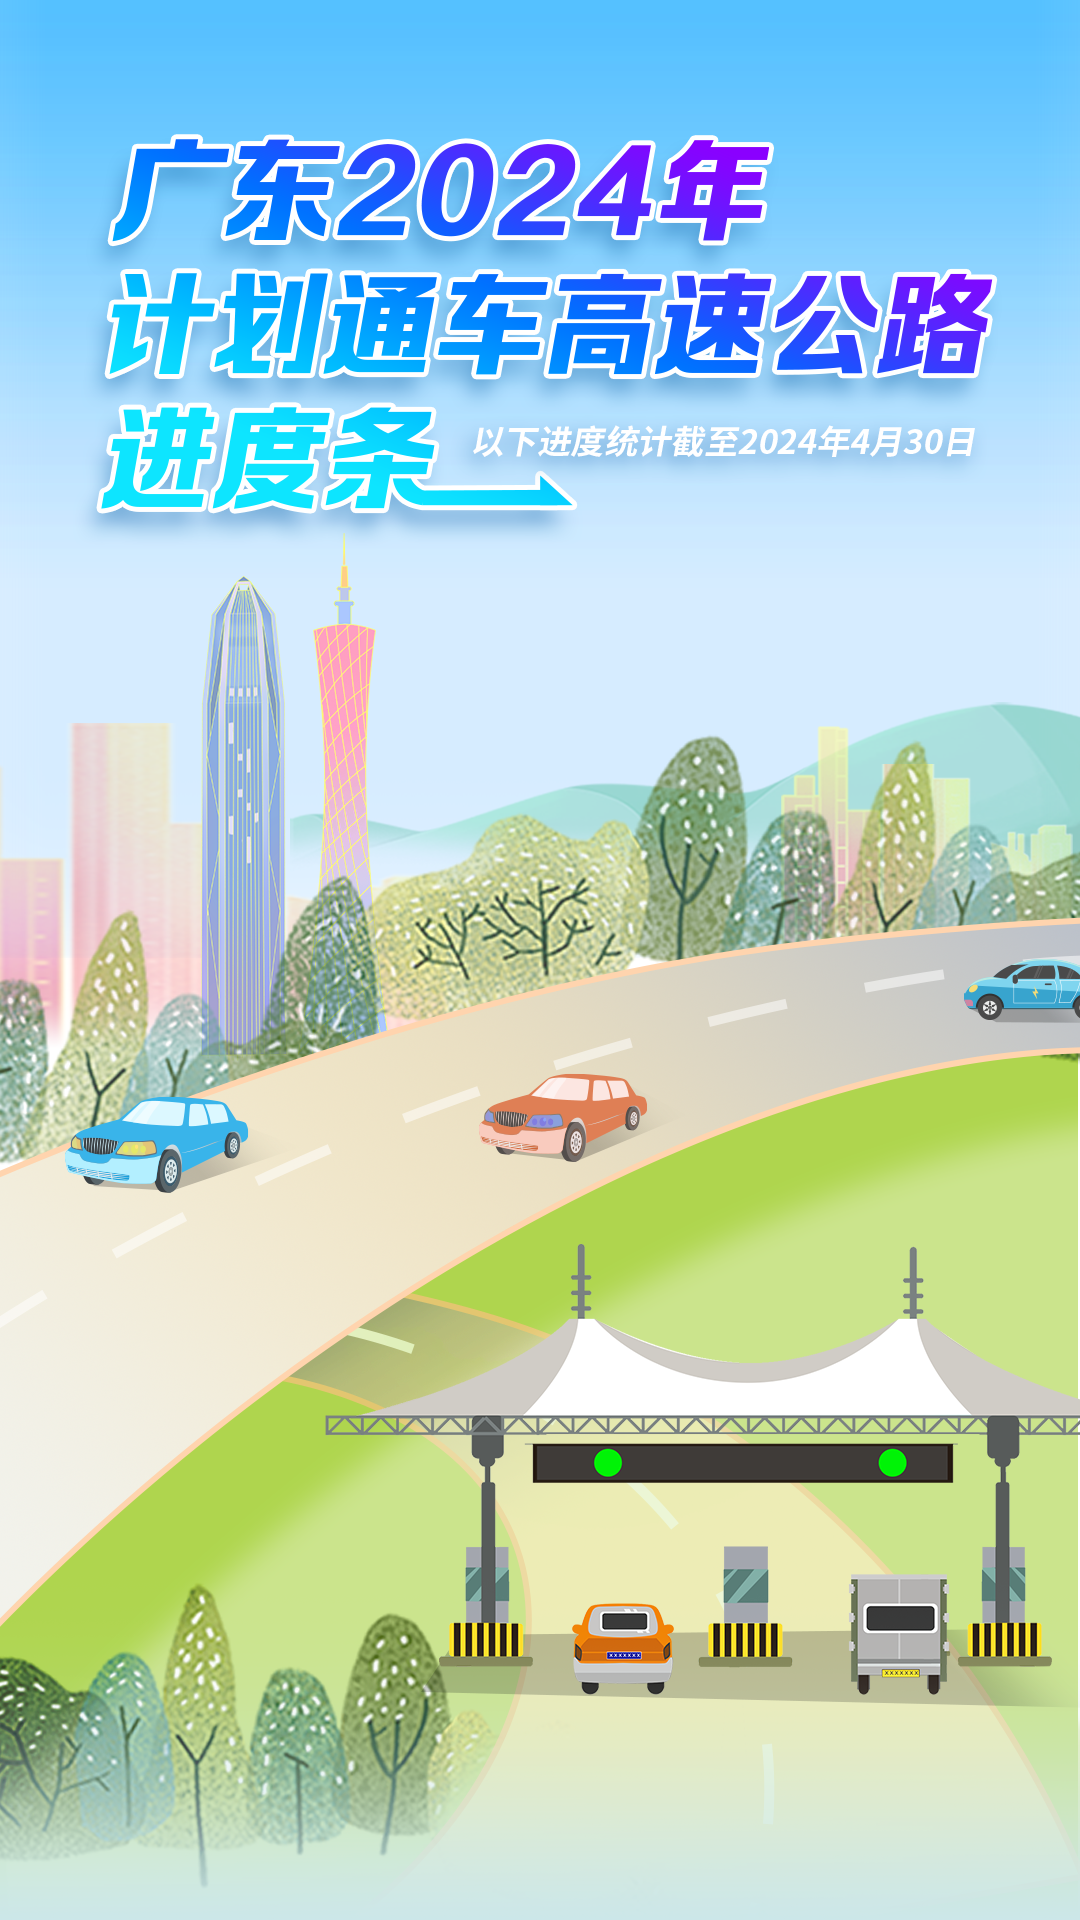 今年广东将建成多条高速，进度已更新！